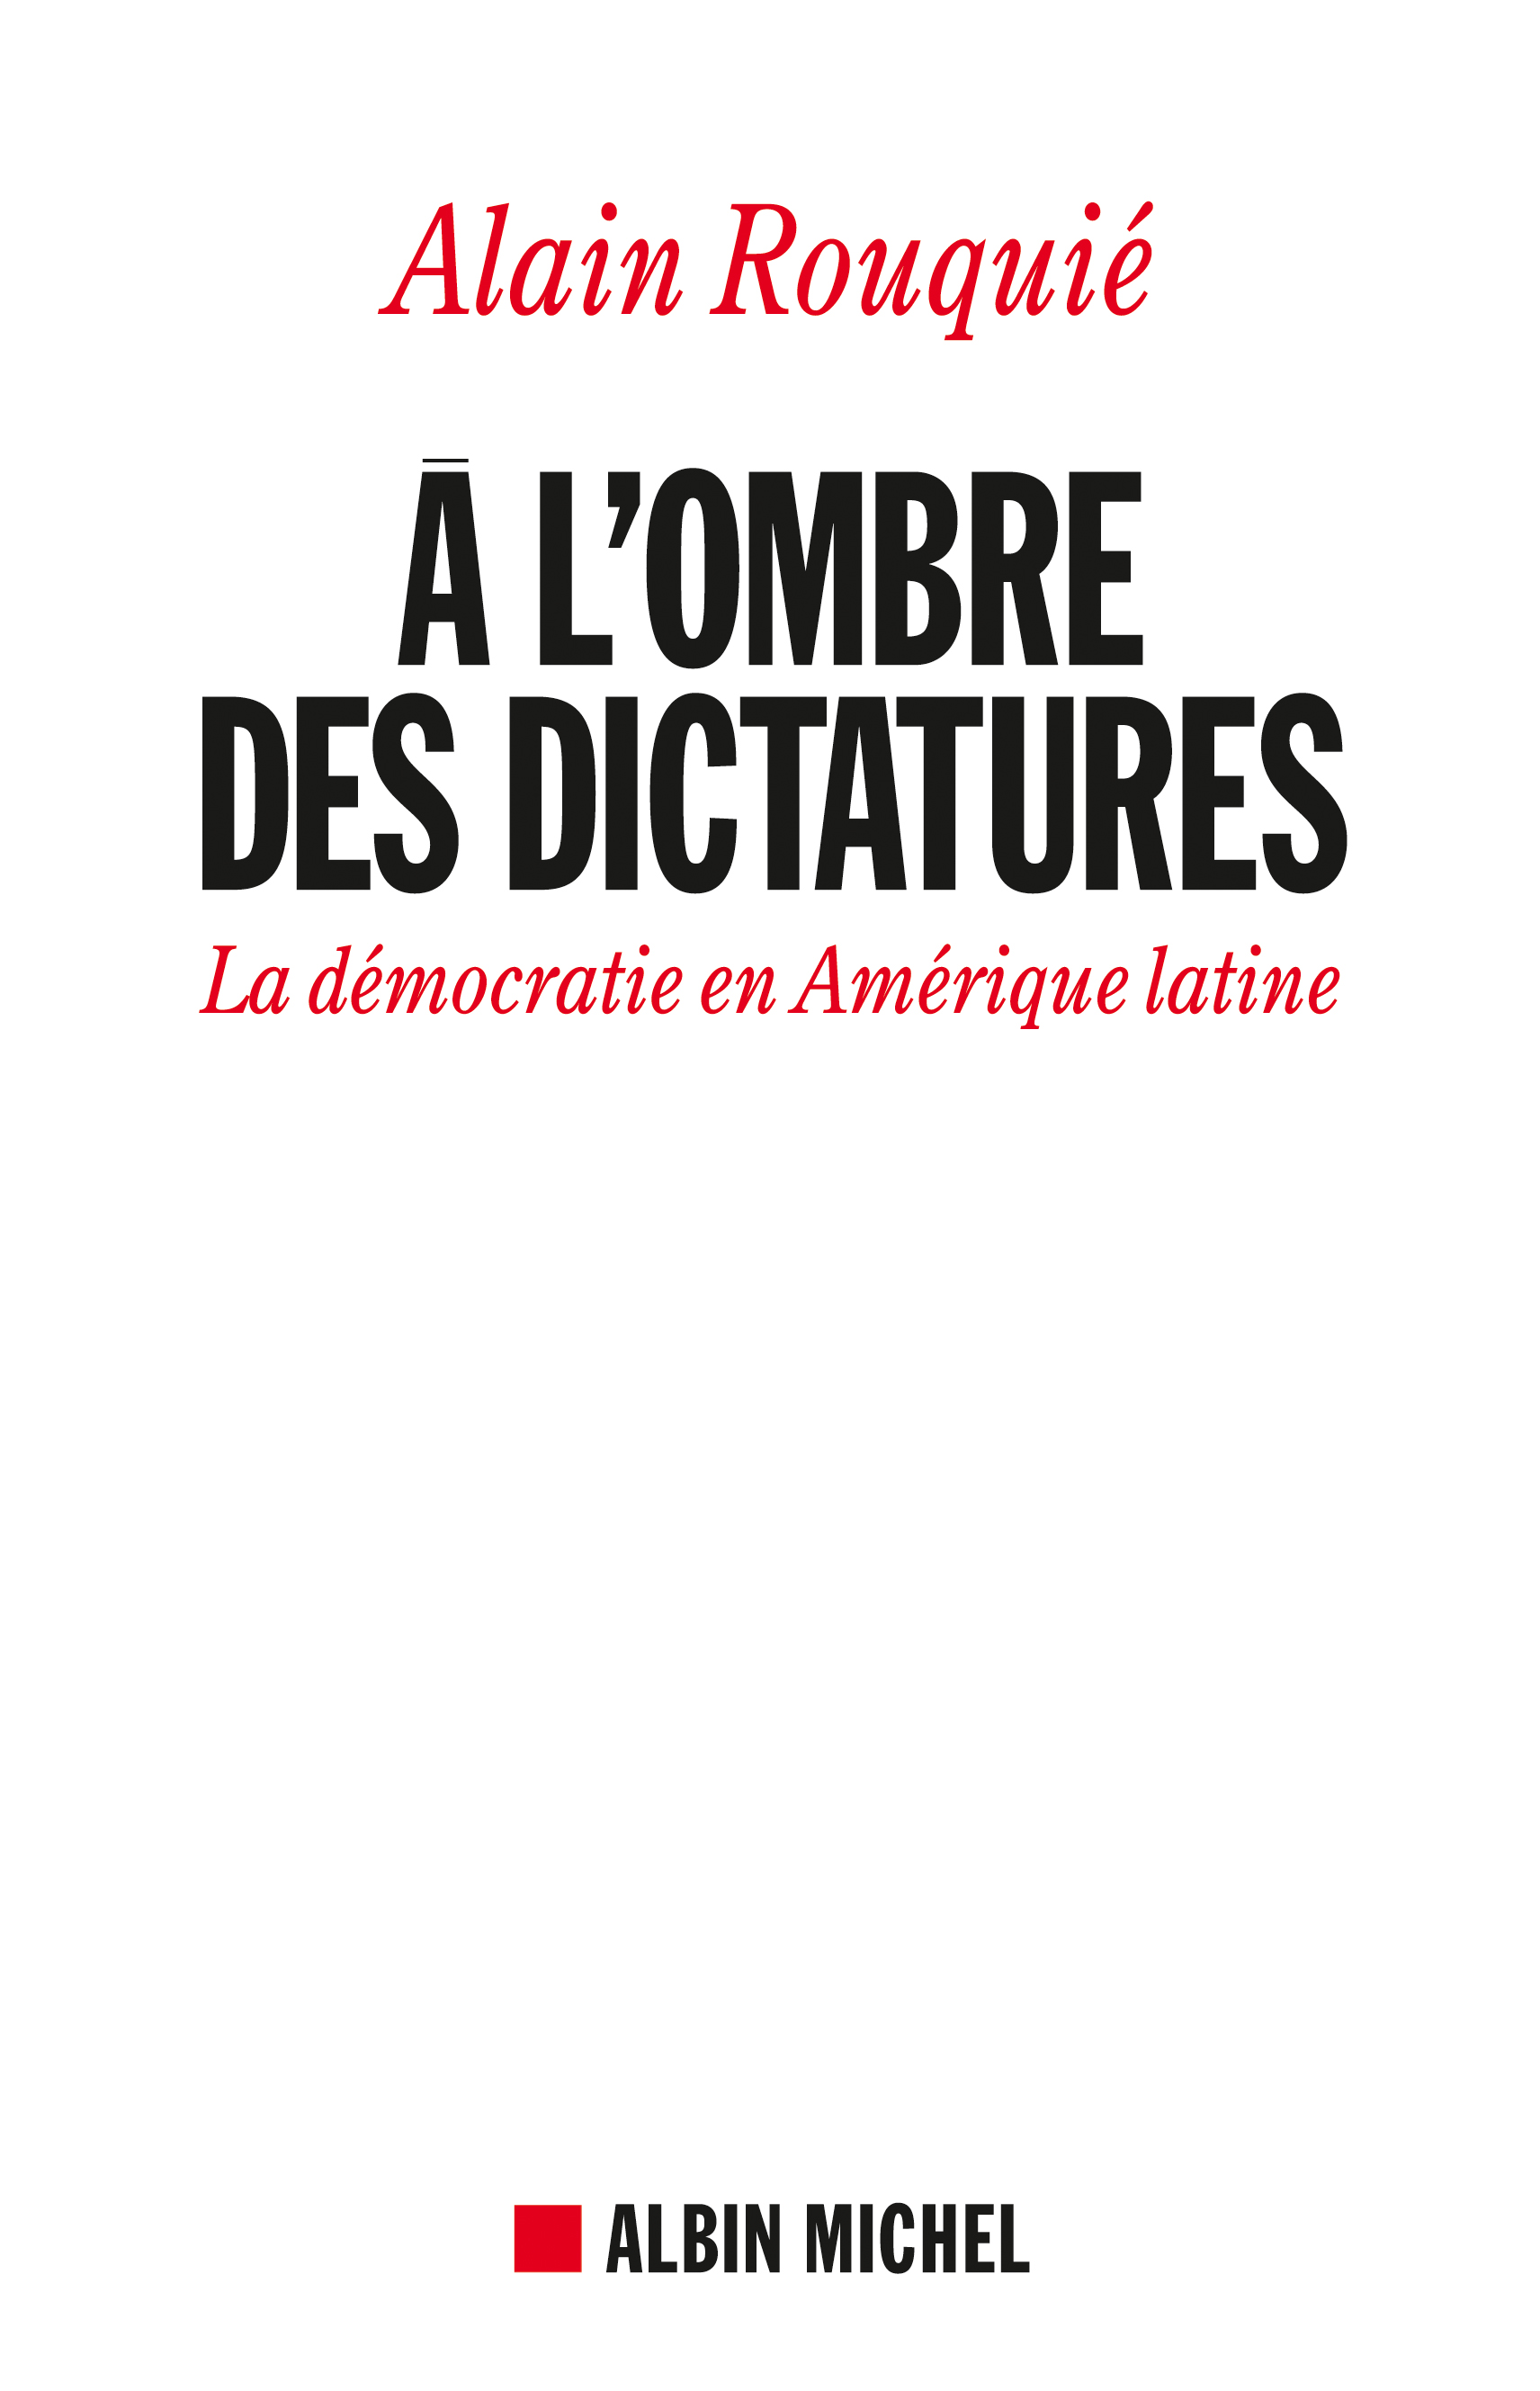 Couverture du livre A l'ombre des dictatures